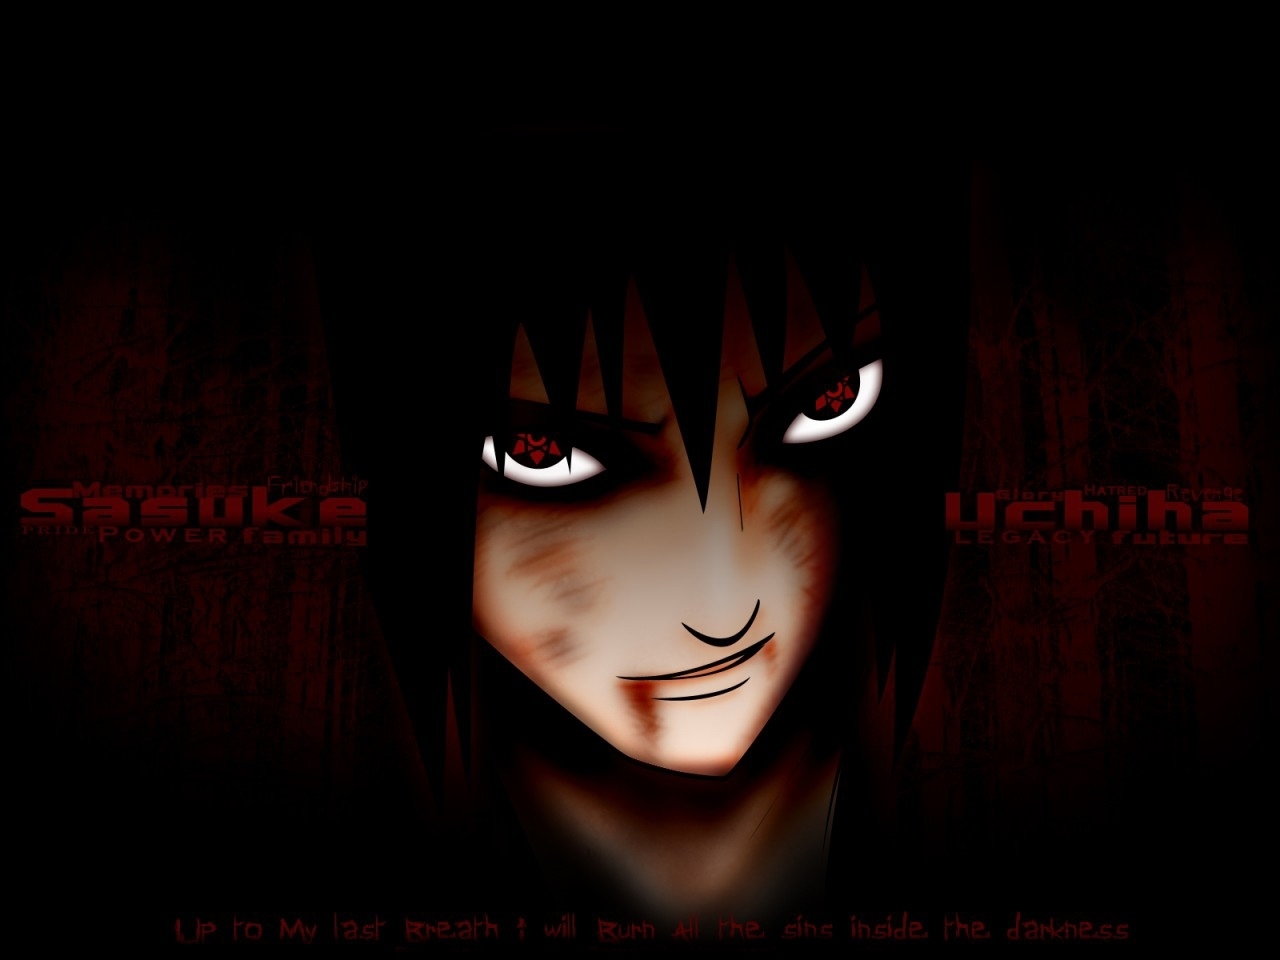 sasuke fondo de pantalla terbaru 2013,rojo,ficción,oscuridad,anime,cg artwork